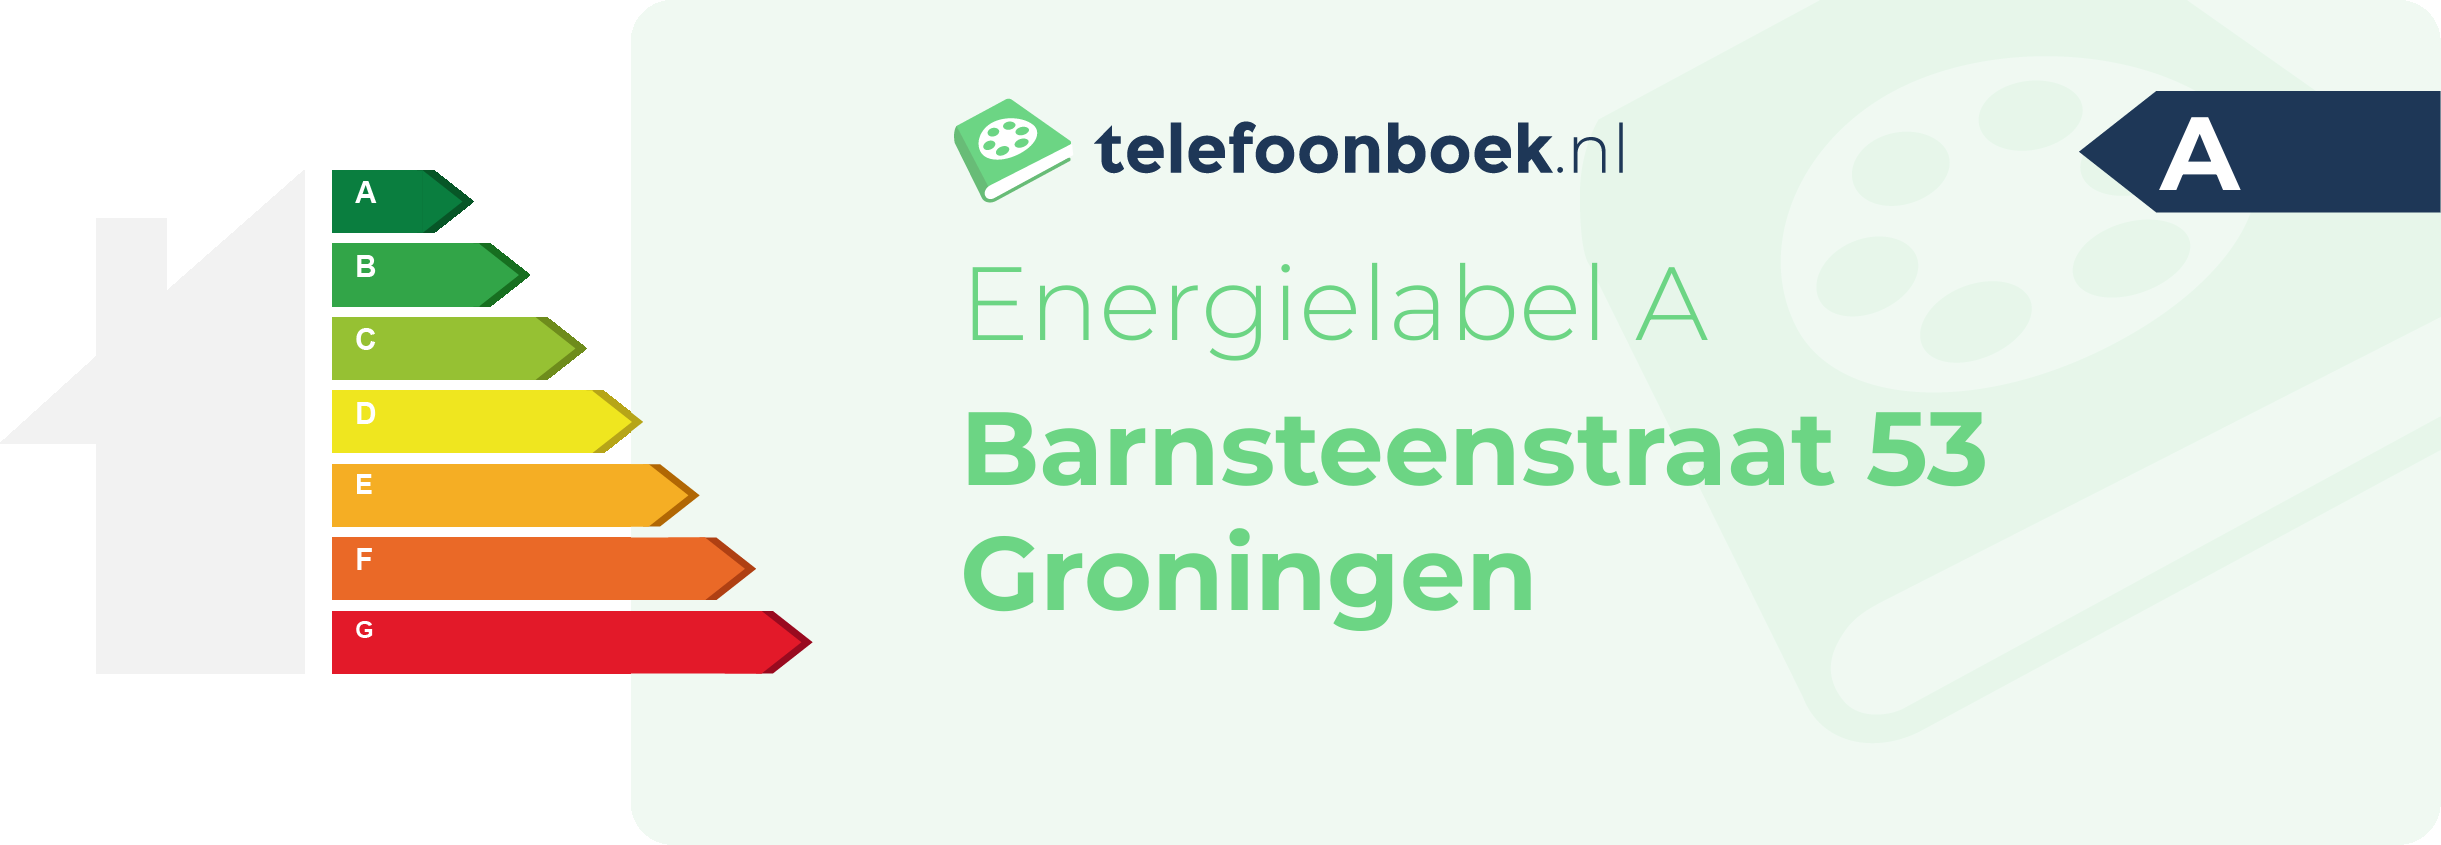 Energielabel Barnsteenstraat 53 Groningen